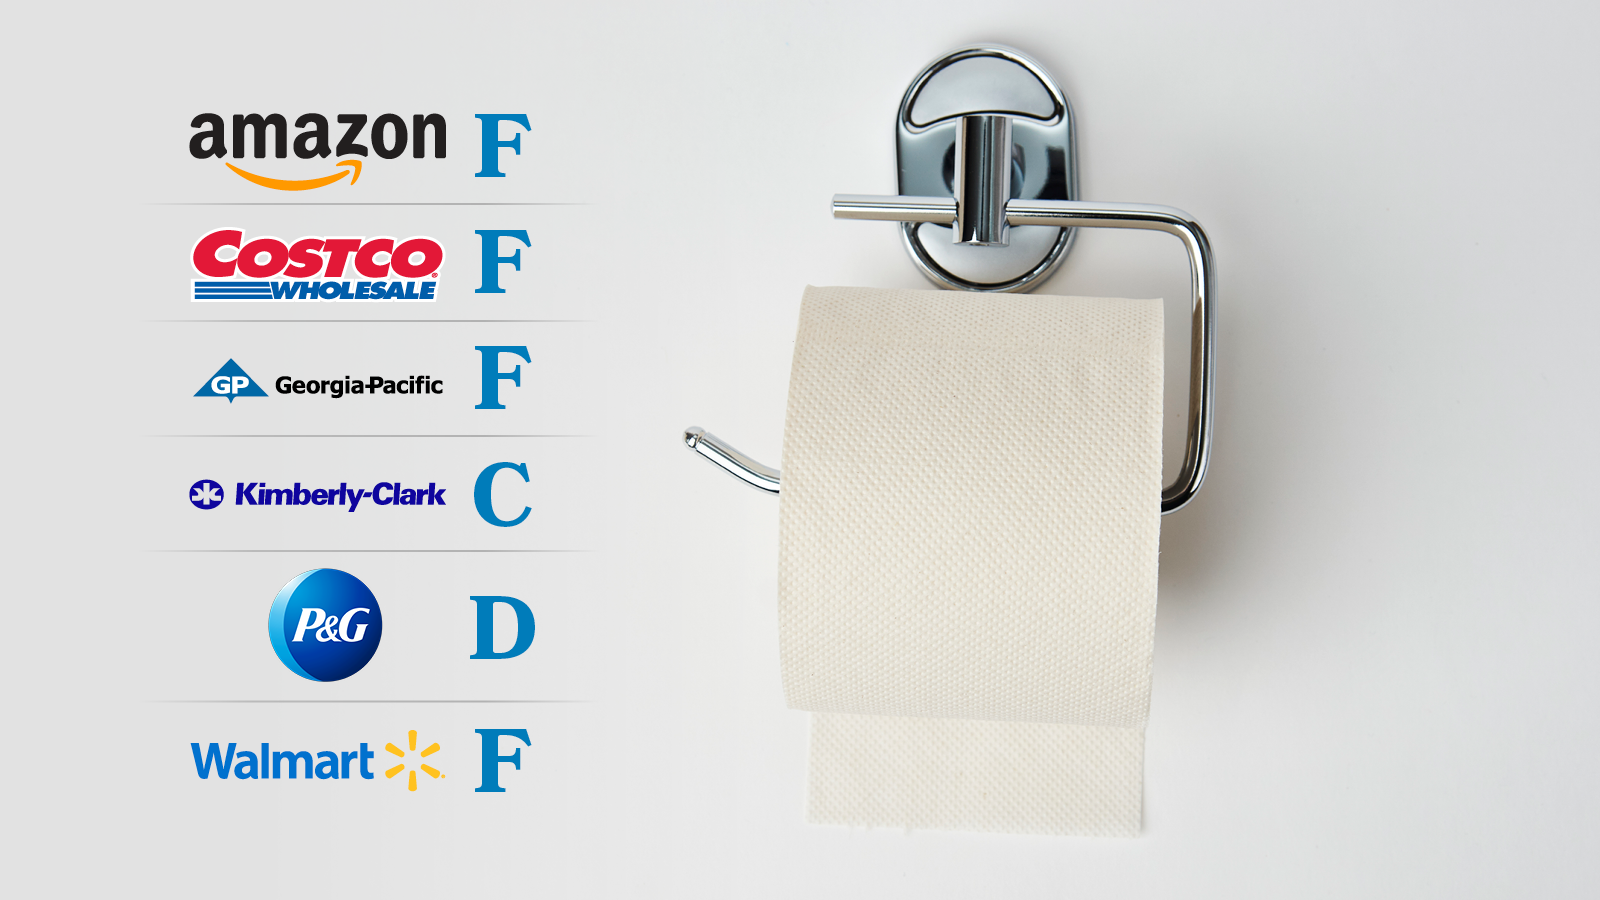 Grade for tissue paper companies (Amazon: F, Costco: F, G-P: F, K-C:F, P&G: D, Walmart: F